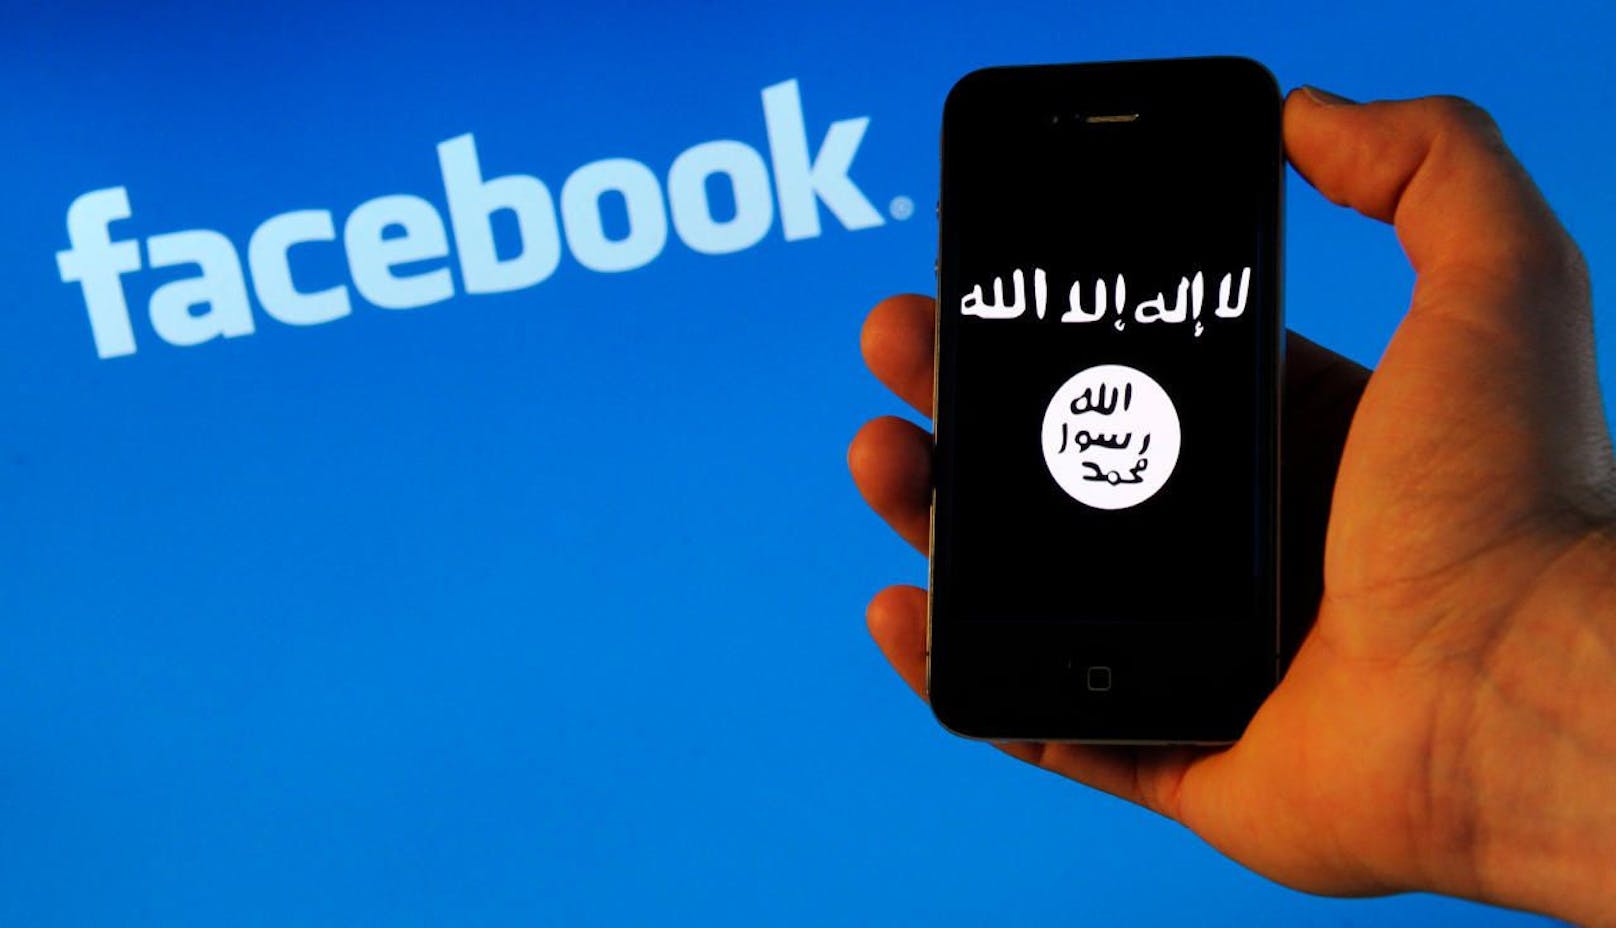 Laut einer Studie hilft Facebook unabsichtlich auch Terroristen neue Anhänger zu radikalisieren. Fotomontage.